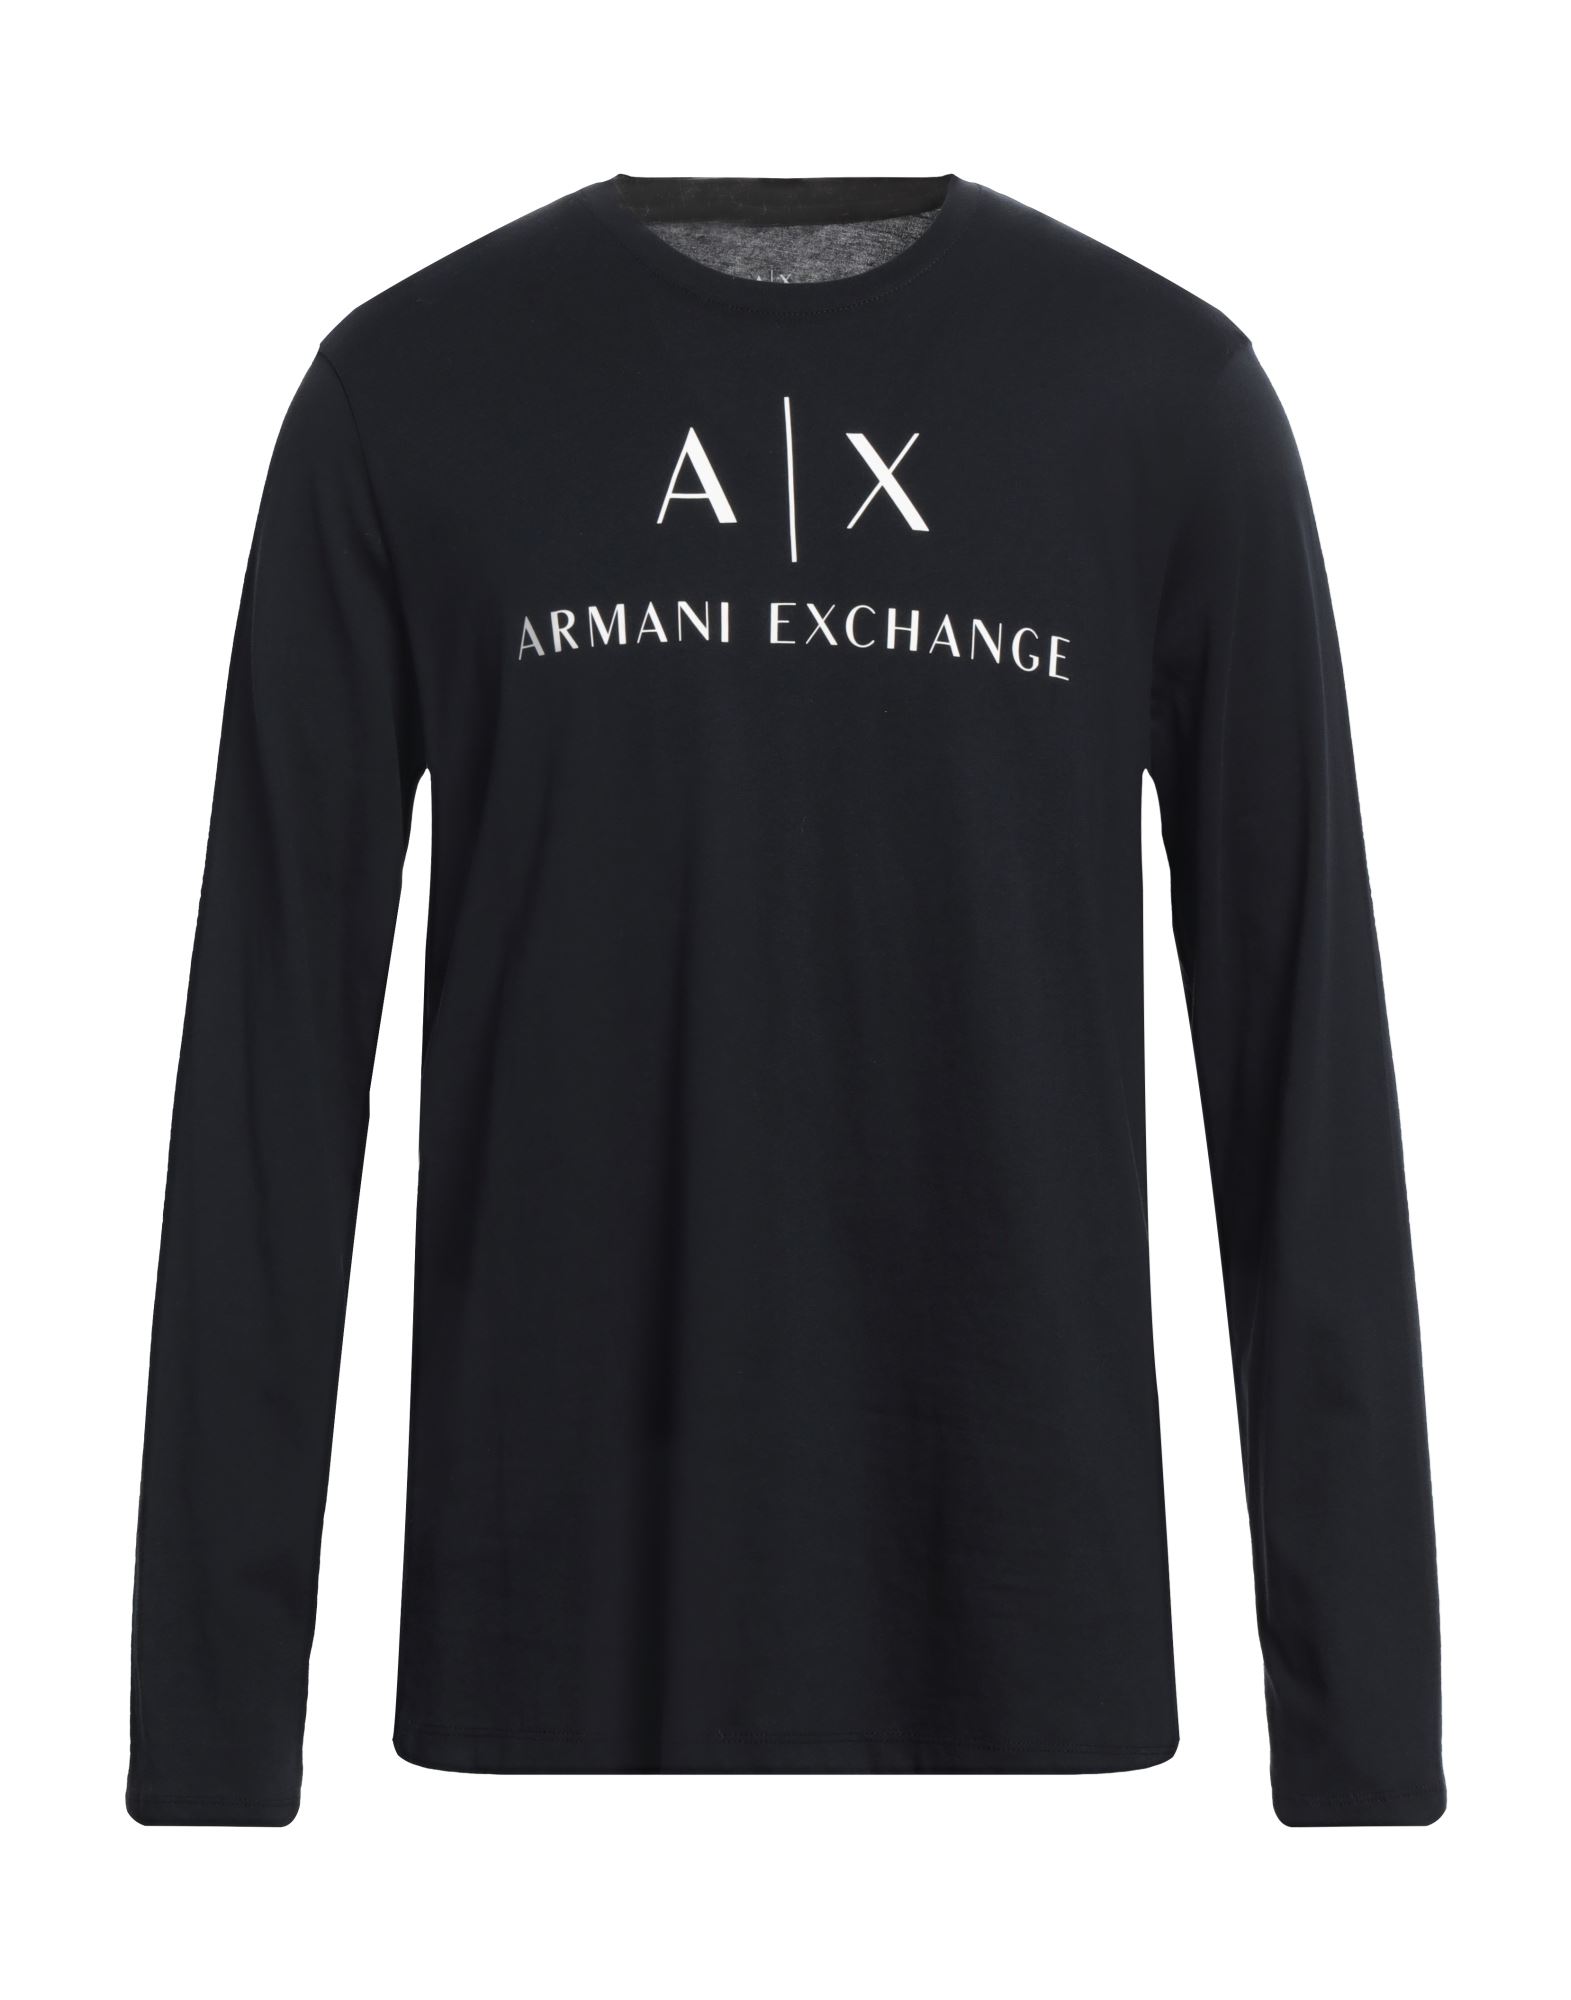 アルマーニ エクスチェンジ(ARMANI EXCHANGE) メンズTシャツ